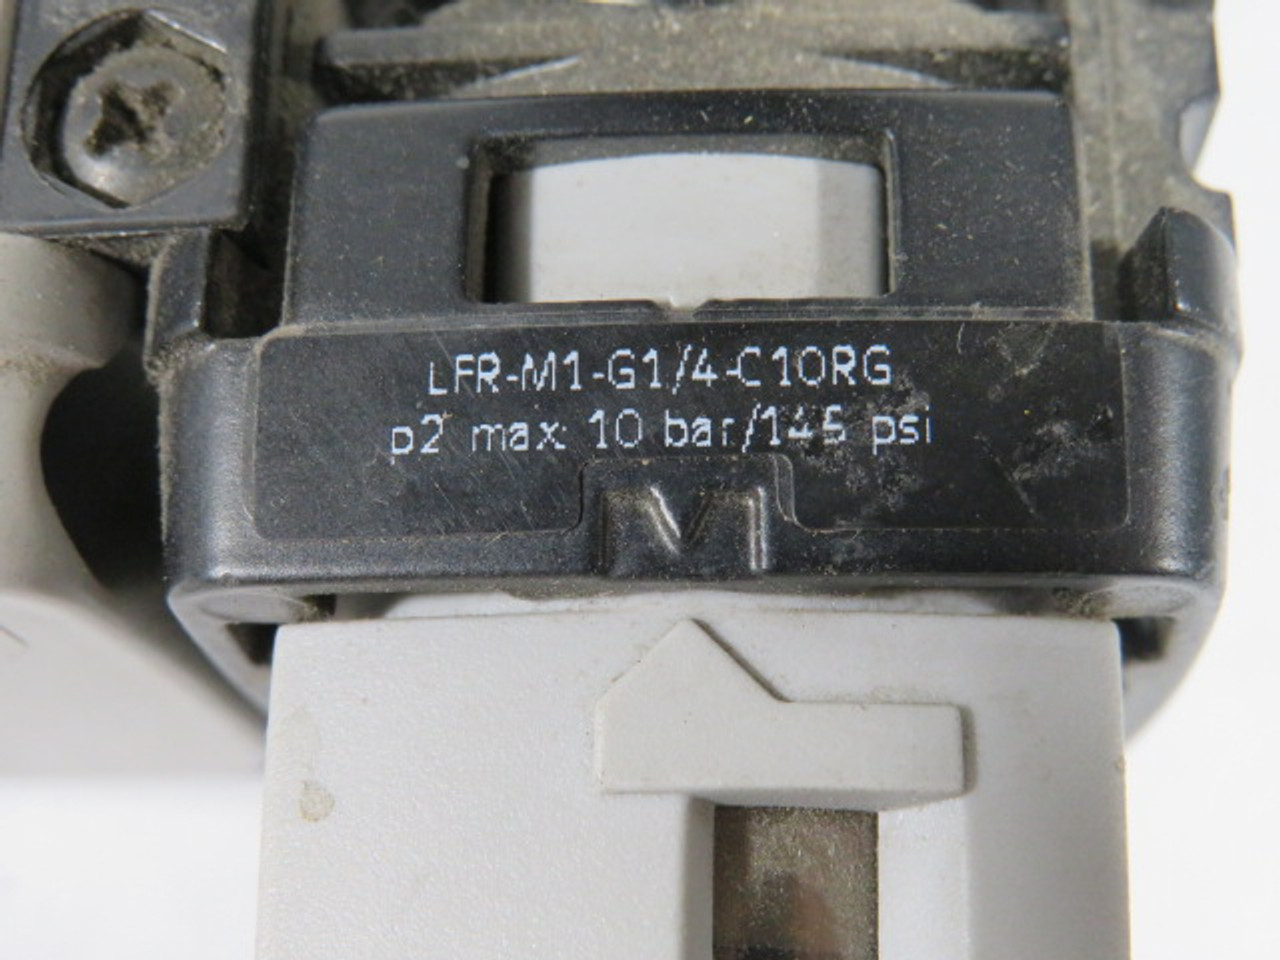 Festo LFR-M1-G1/4-C10RG Filter Regulator w/HEA-M1-N1/4 MISSING CASE USED